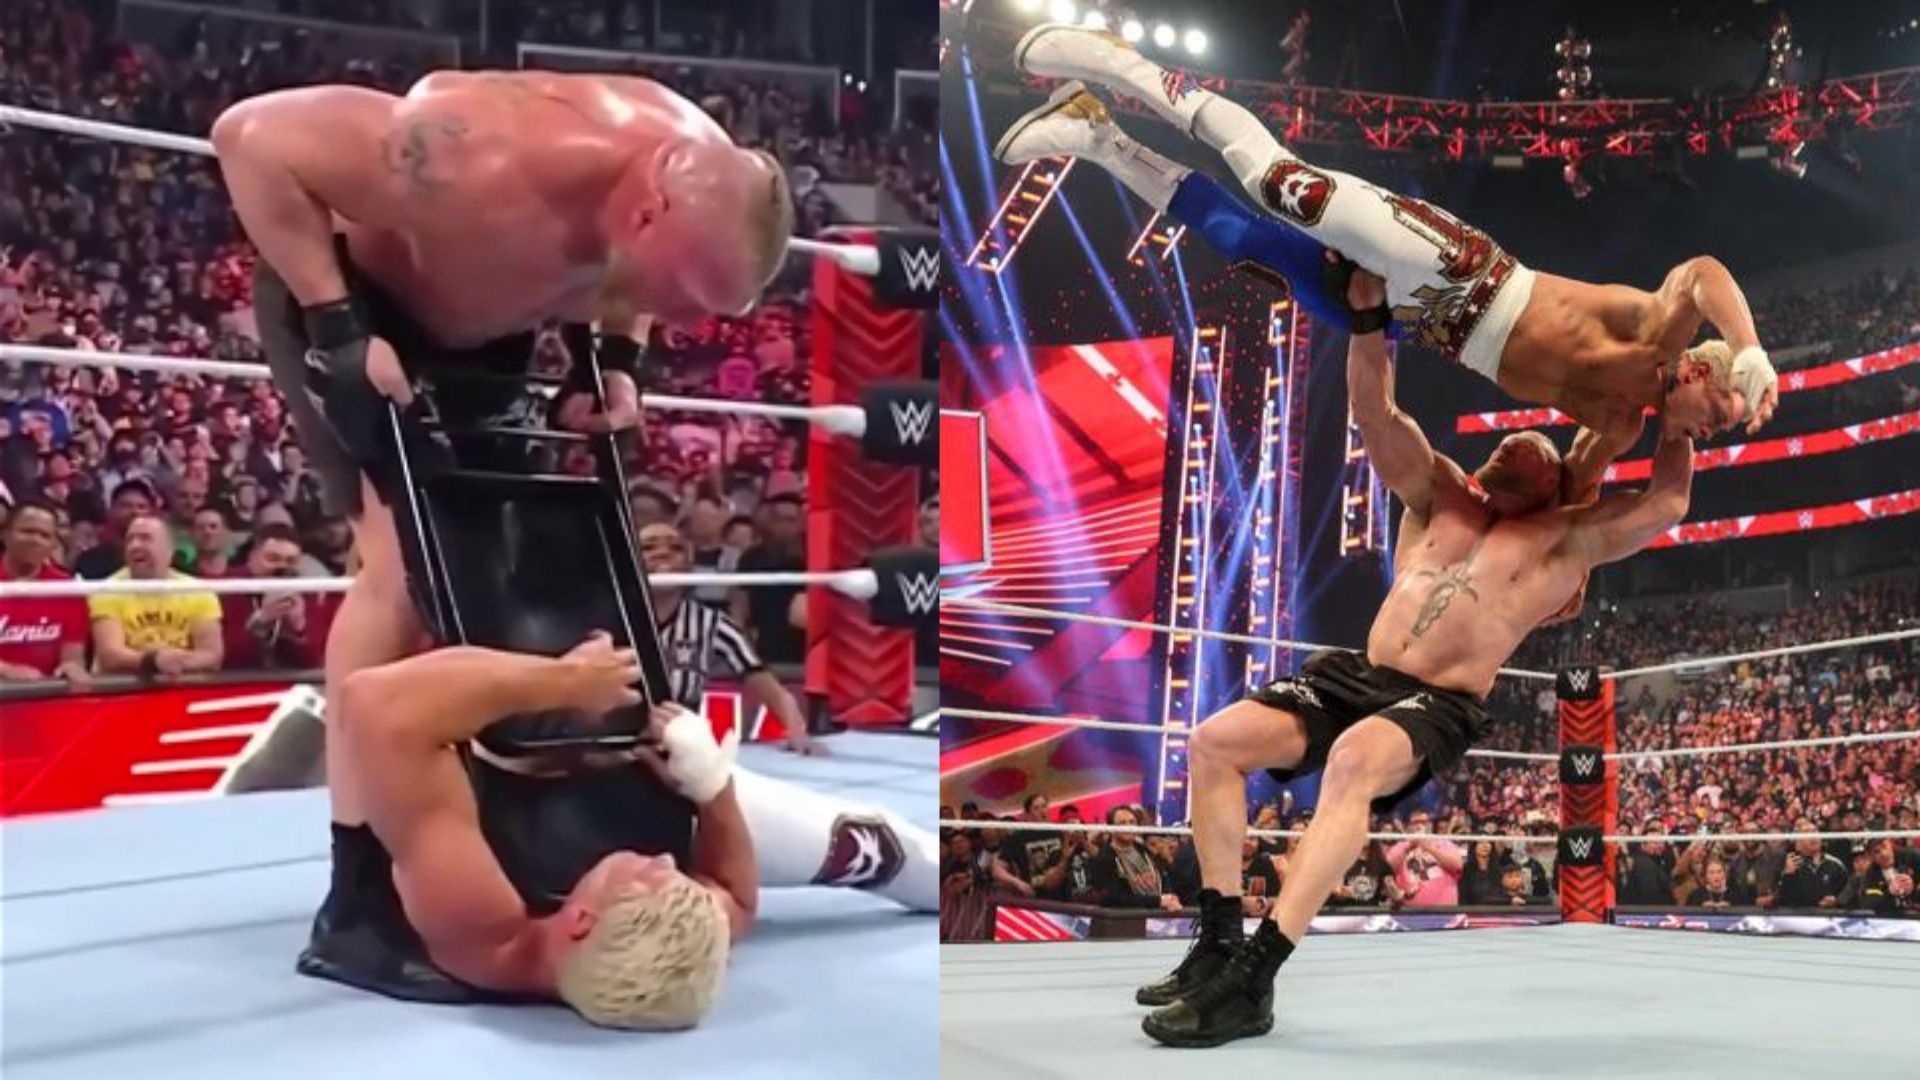 Brock Lesnar suplexes Cody Rhodes